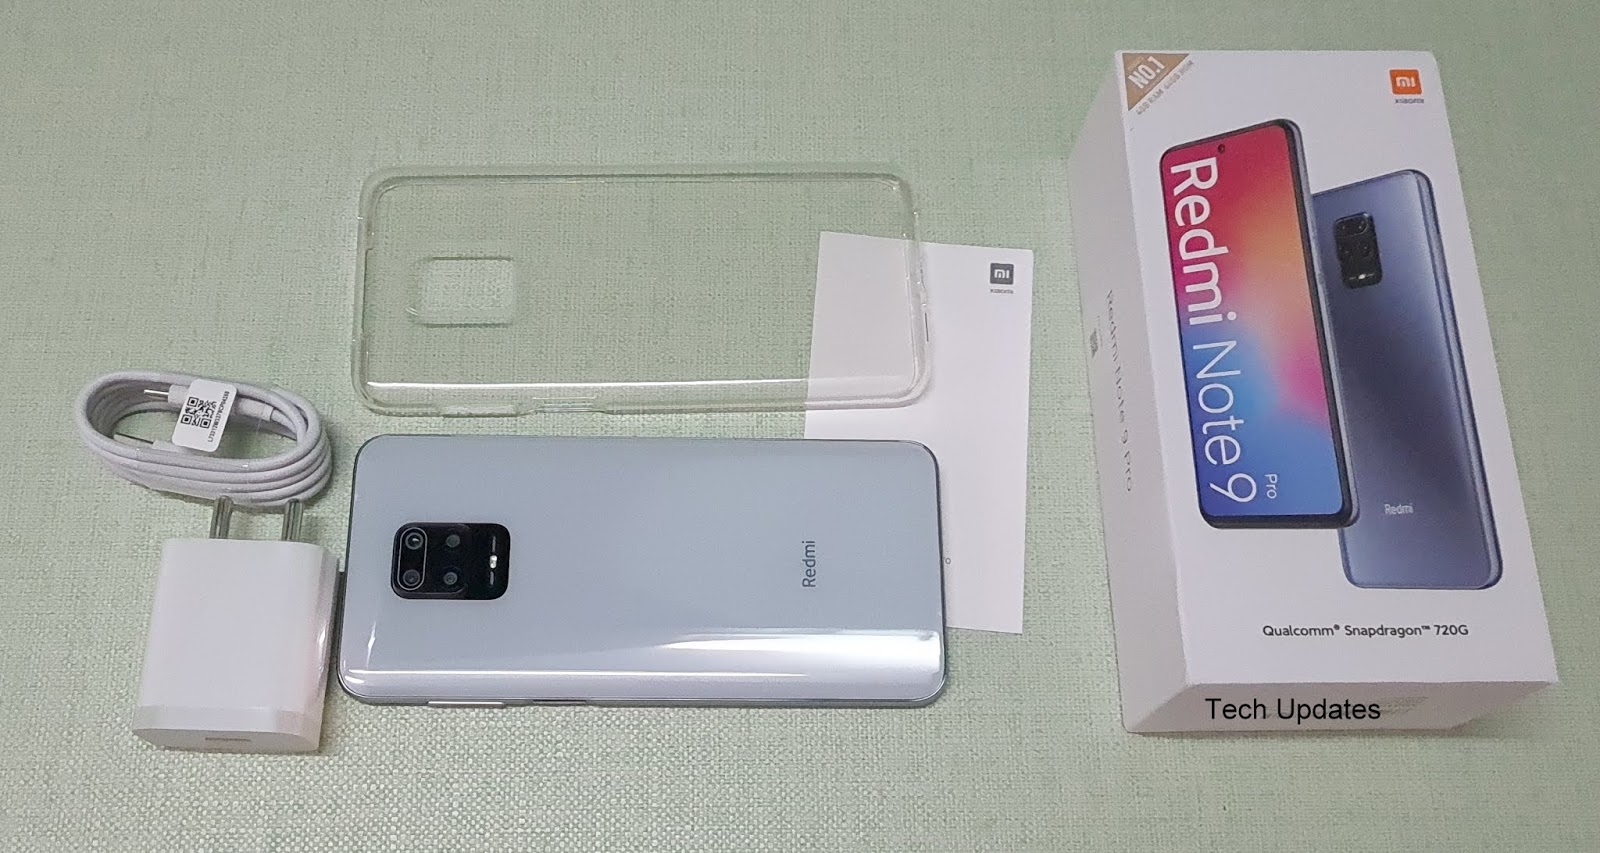 Redmi Note 9 Pro 64gb White